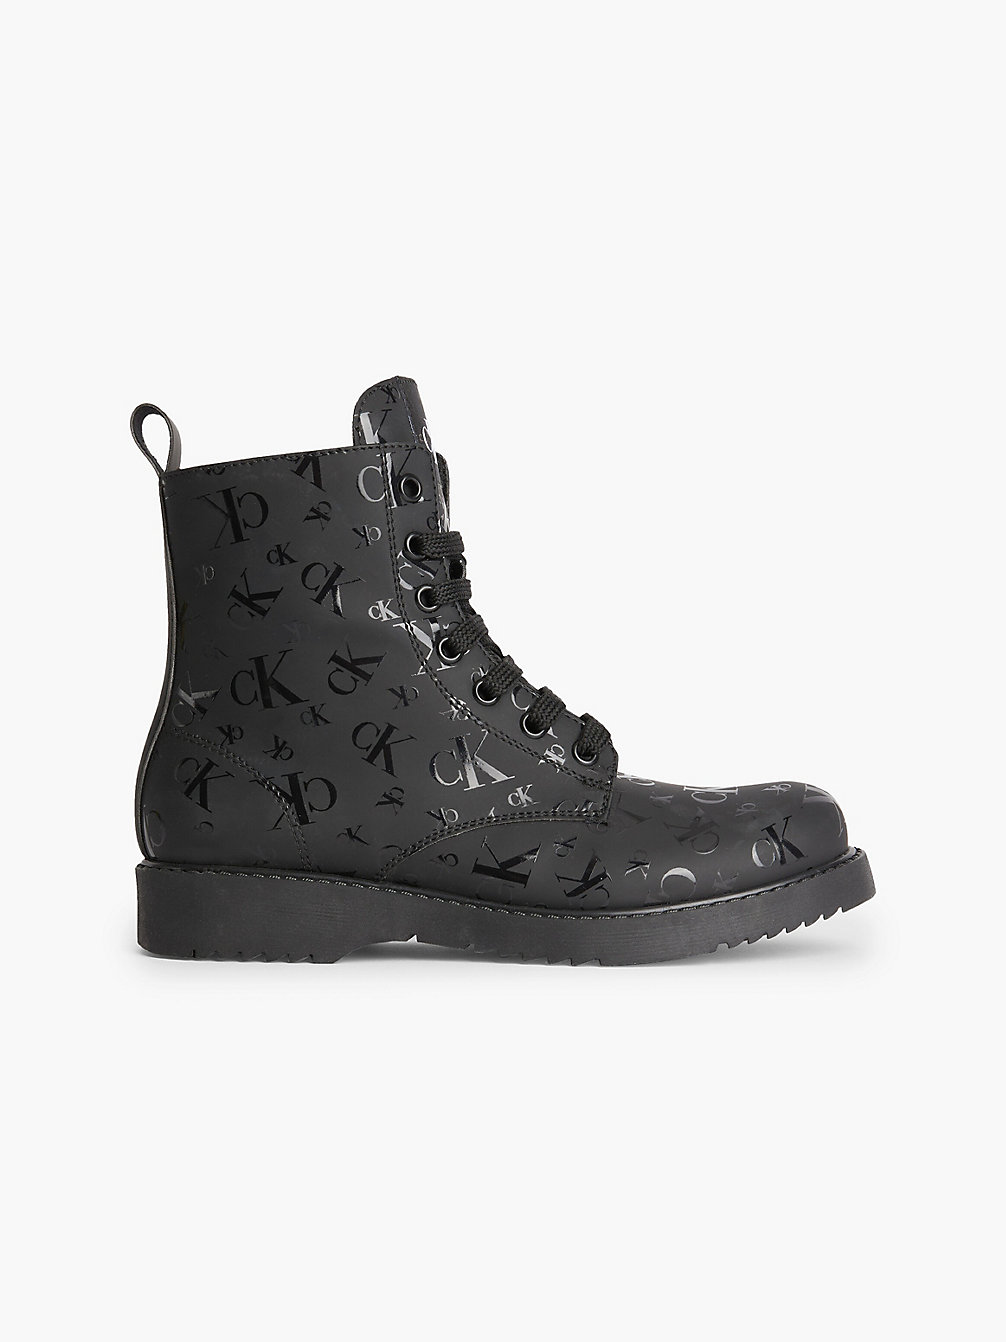 BLACK > Kinder-Boots Mit Logo > undefined girls - Calvin Klein